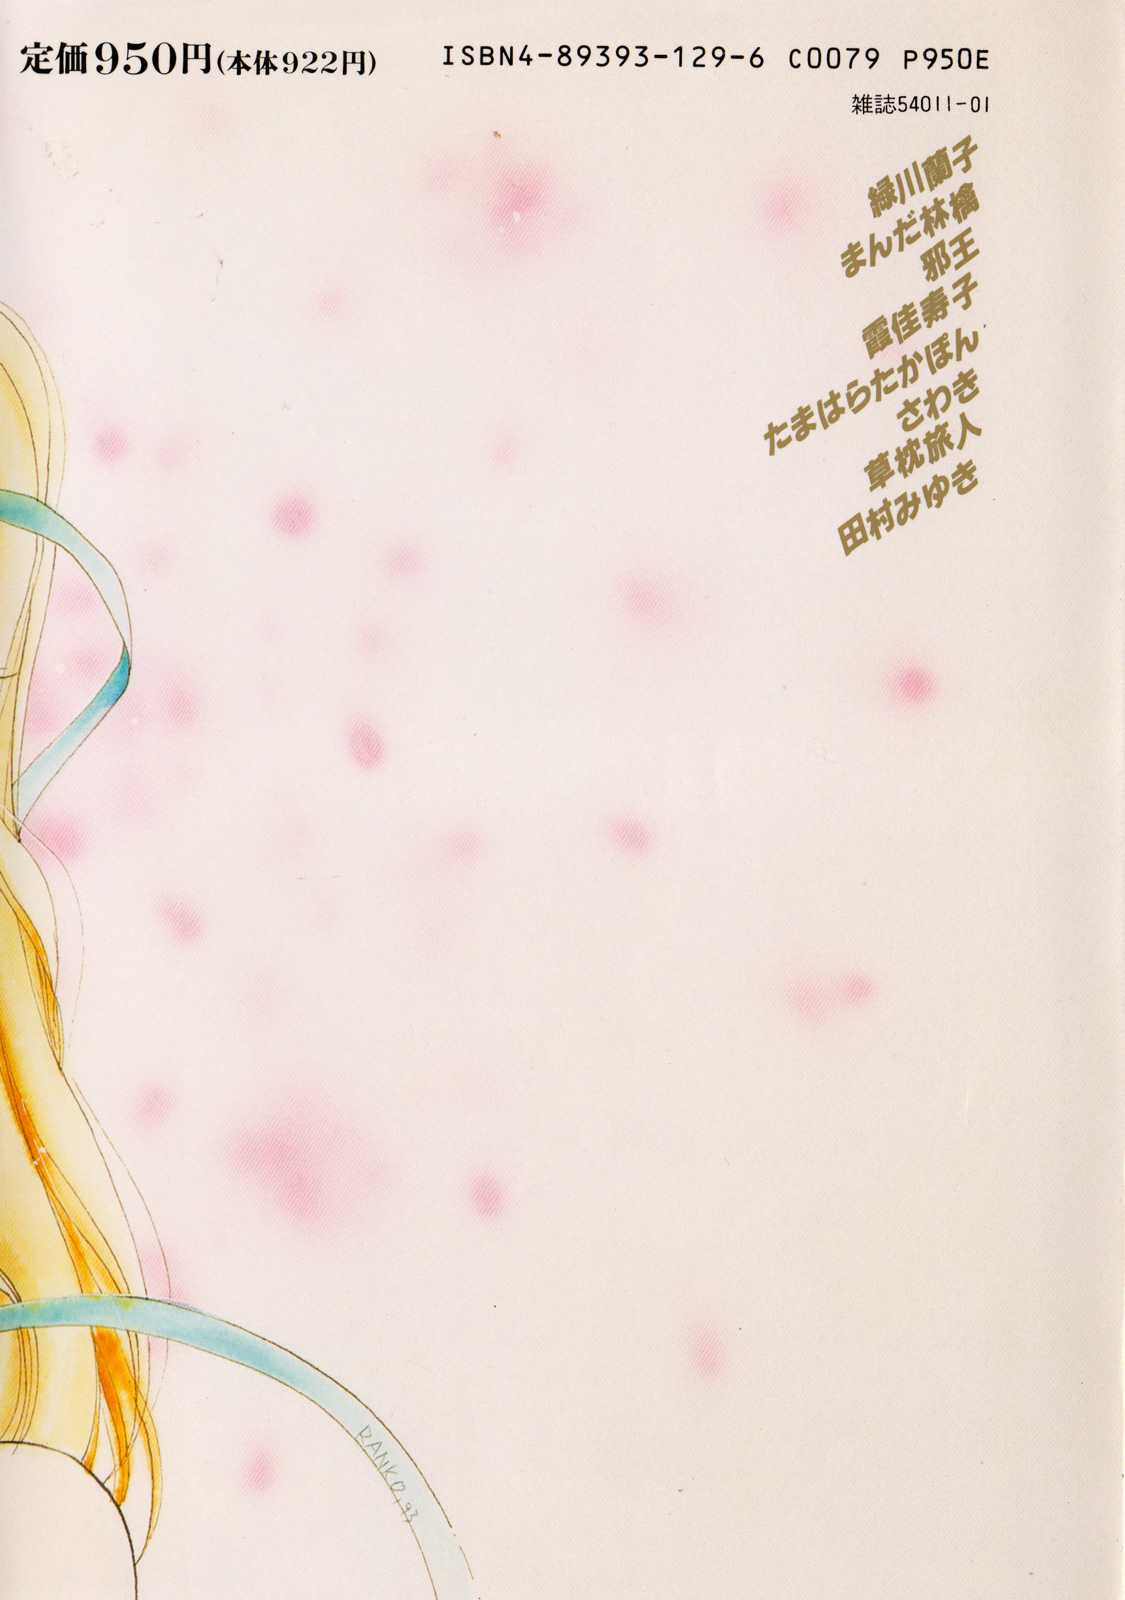 [Anthology] Lunatic Party 1 (Sailor Moon) [アンソロジー] ルナティックパーティー1 (美少女戦士セーラームーン)